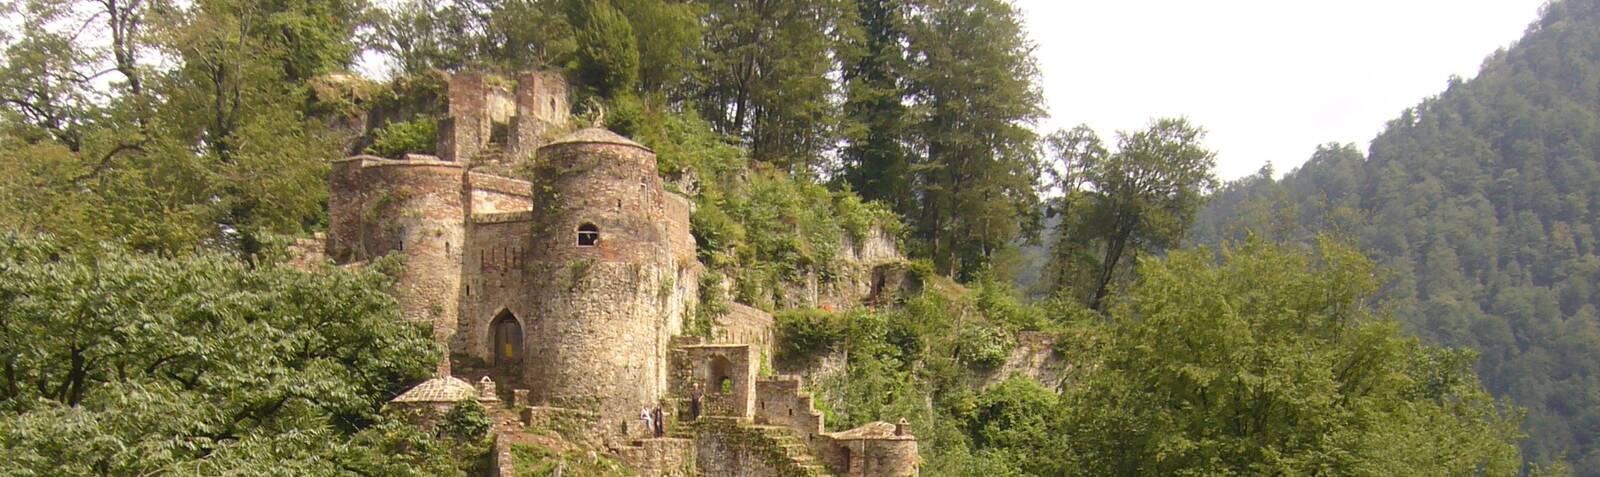 El Castillo de Rudkhan